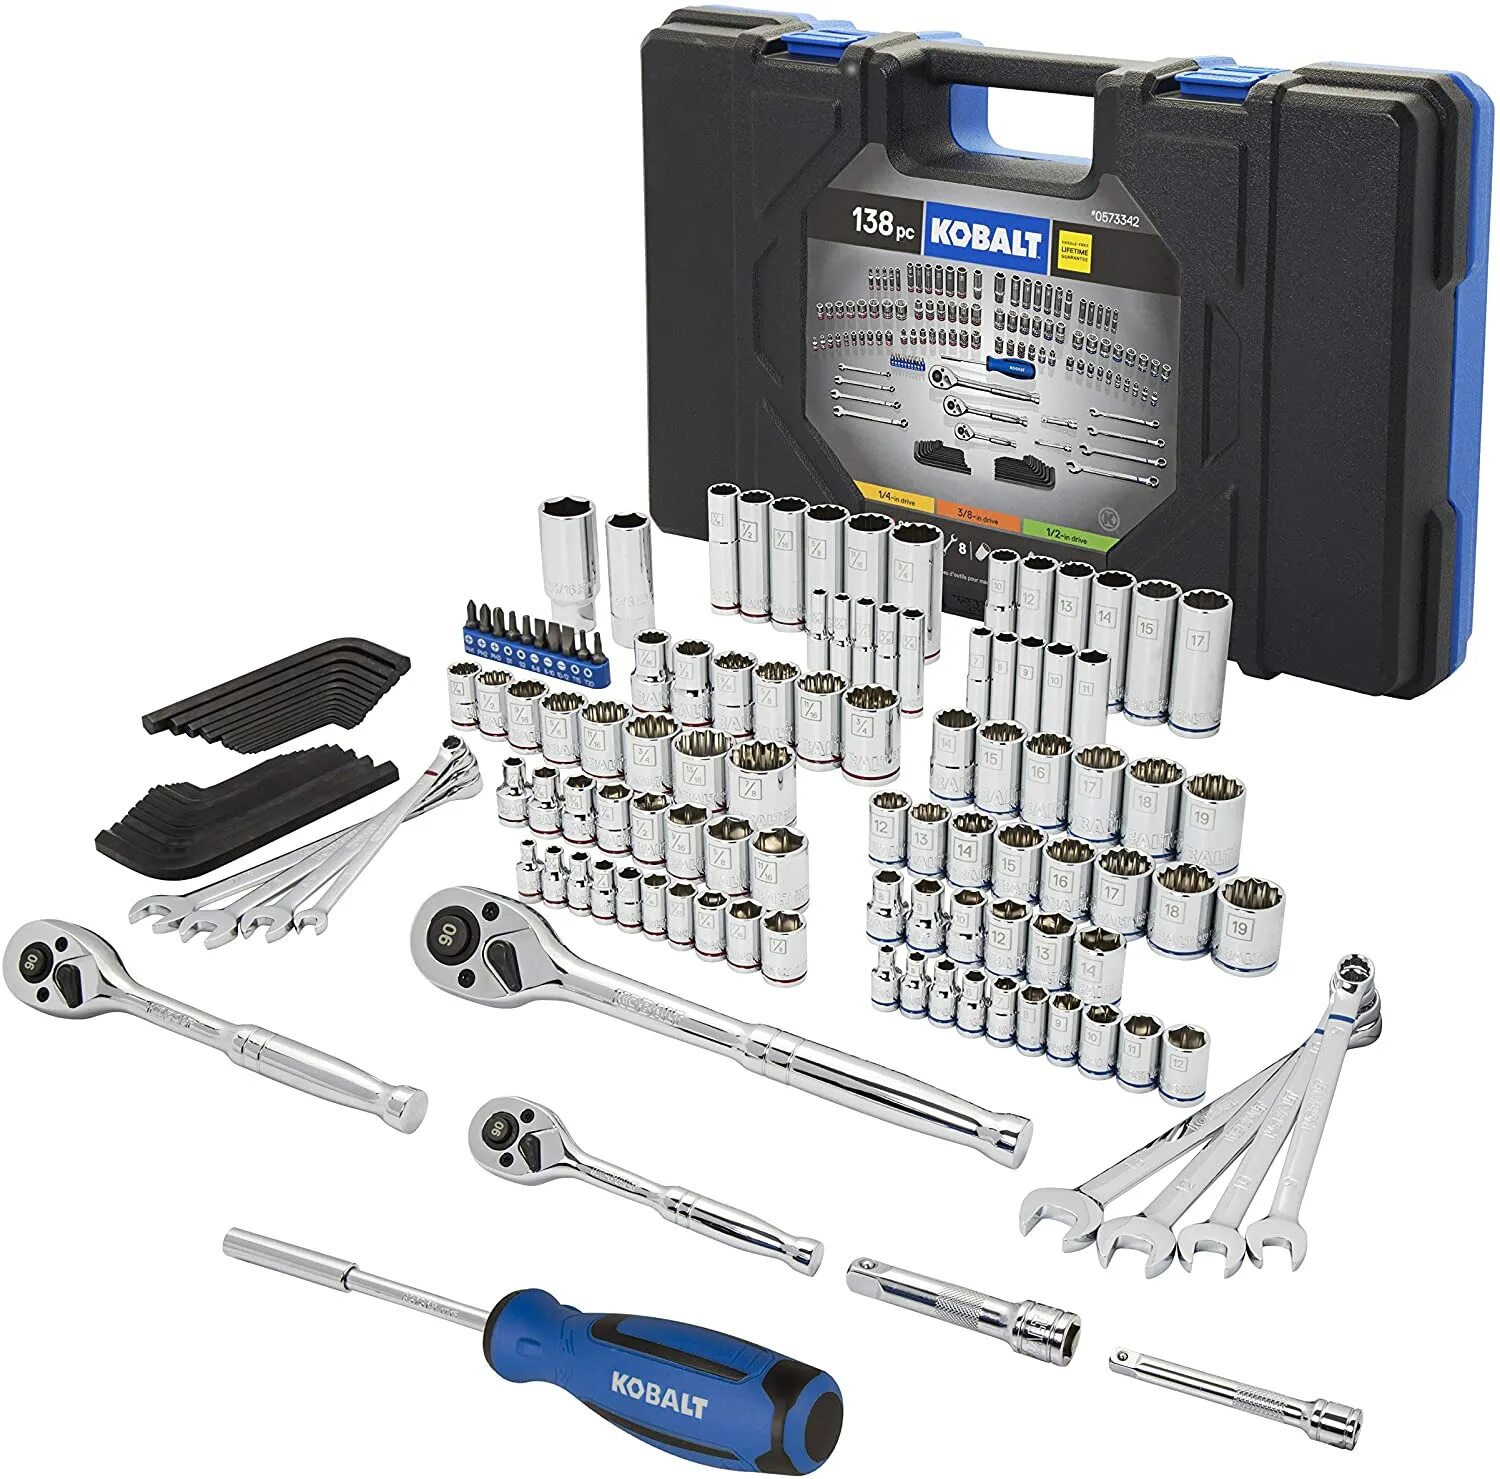 Набор головок фирма Ombra 69pc Mechanic Tool Set. Kobalt Tools инструмент. Kobalt Screwdriver bit Set 01464. Bosch Ratchet. Wrench Set.